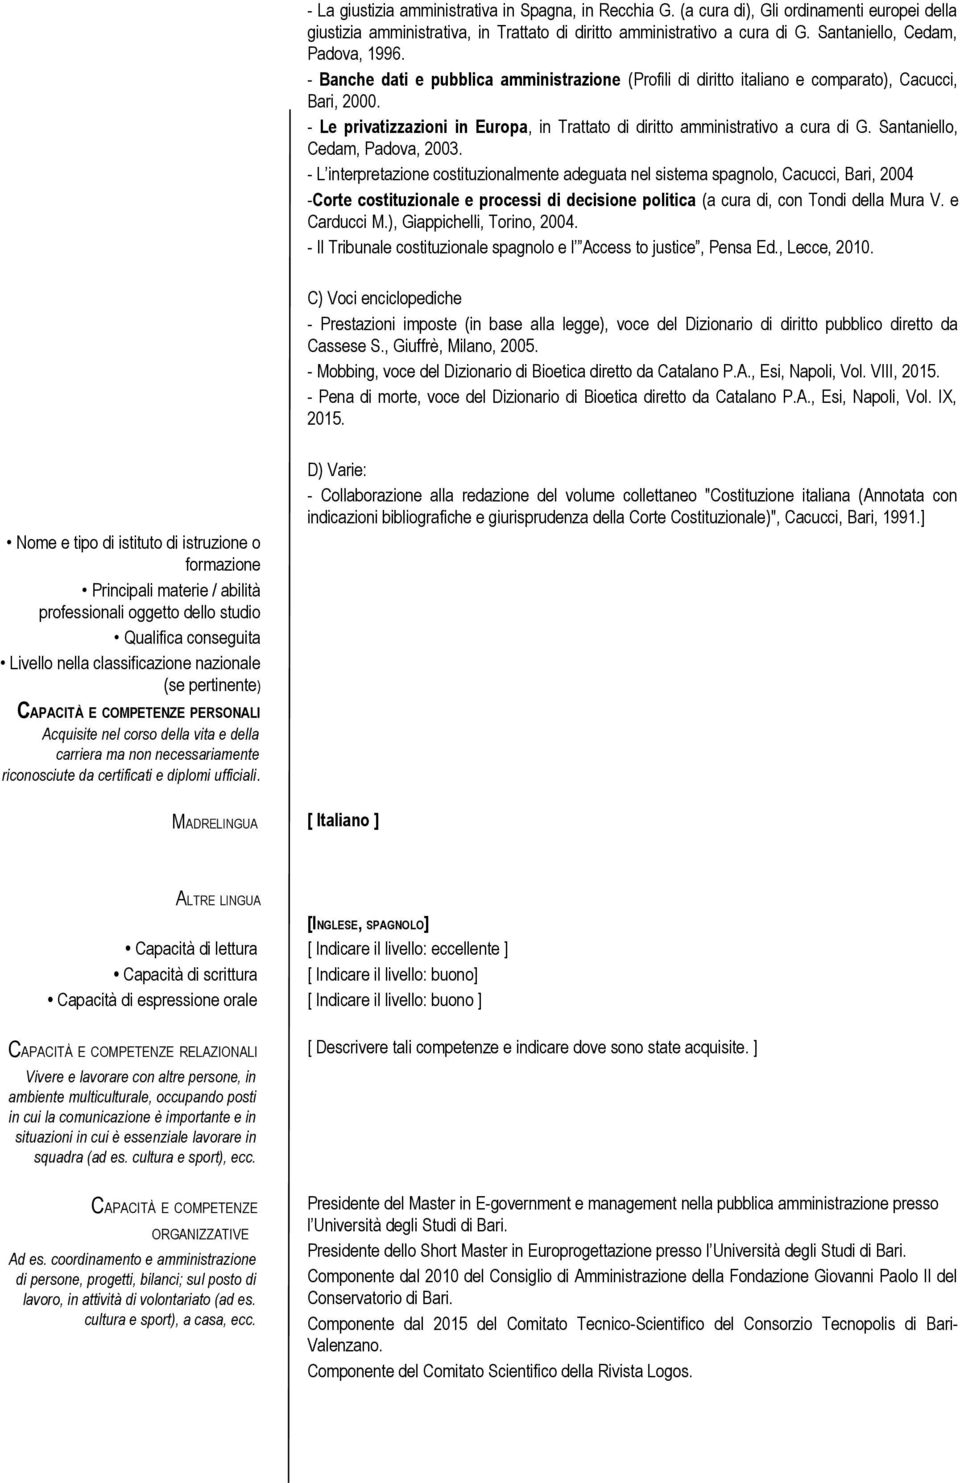 - Le privatizzazioni in Europa, in Trattato di diritto amministrativo a cura di G. Santaniello, Cedam, Padova, 2003.